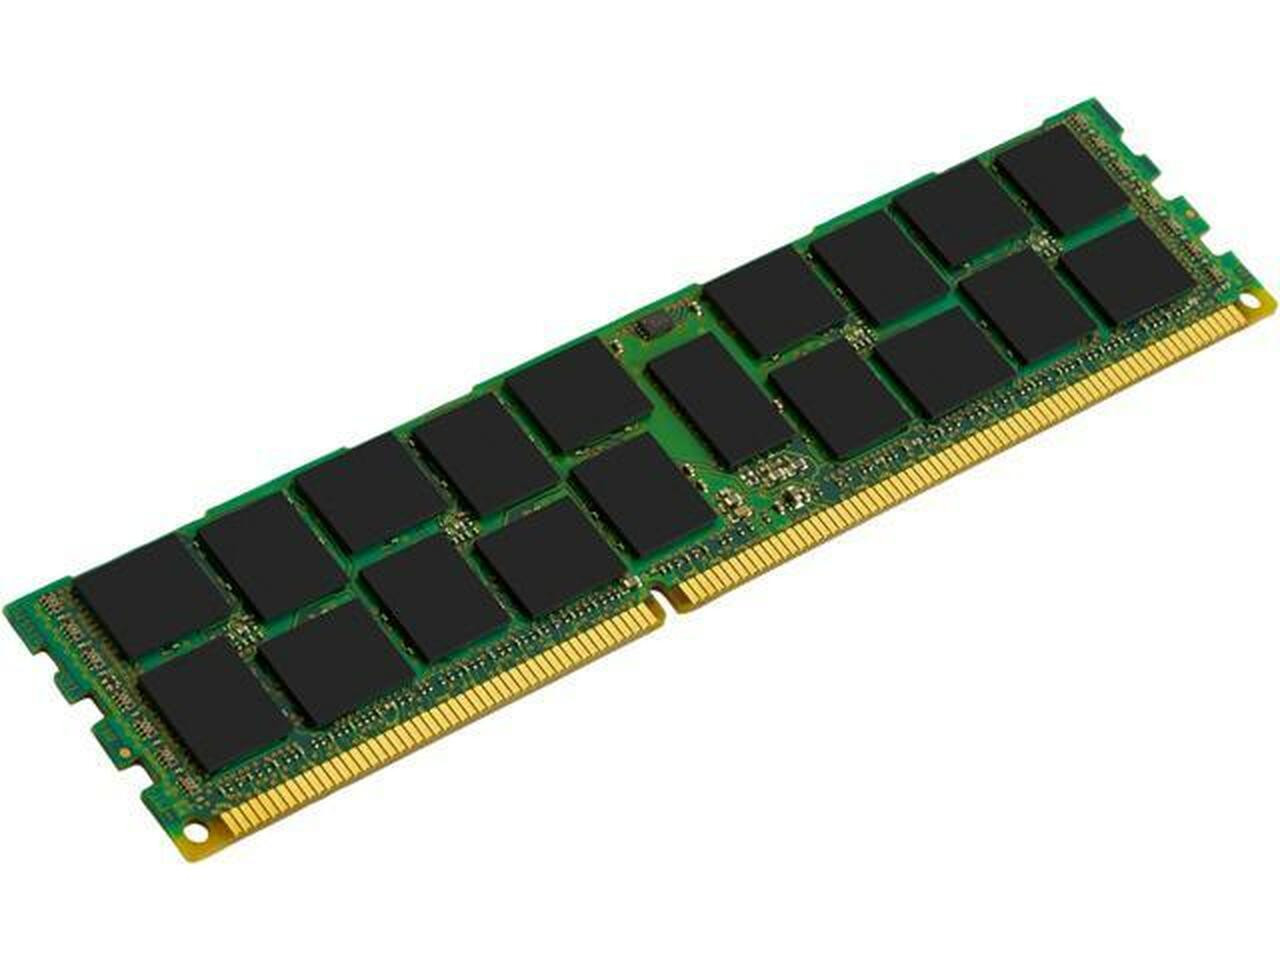 Netpatibles 8GB DDR3 SDRAM Memory Module - MEMDR380LHL05ER10NPM